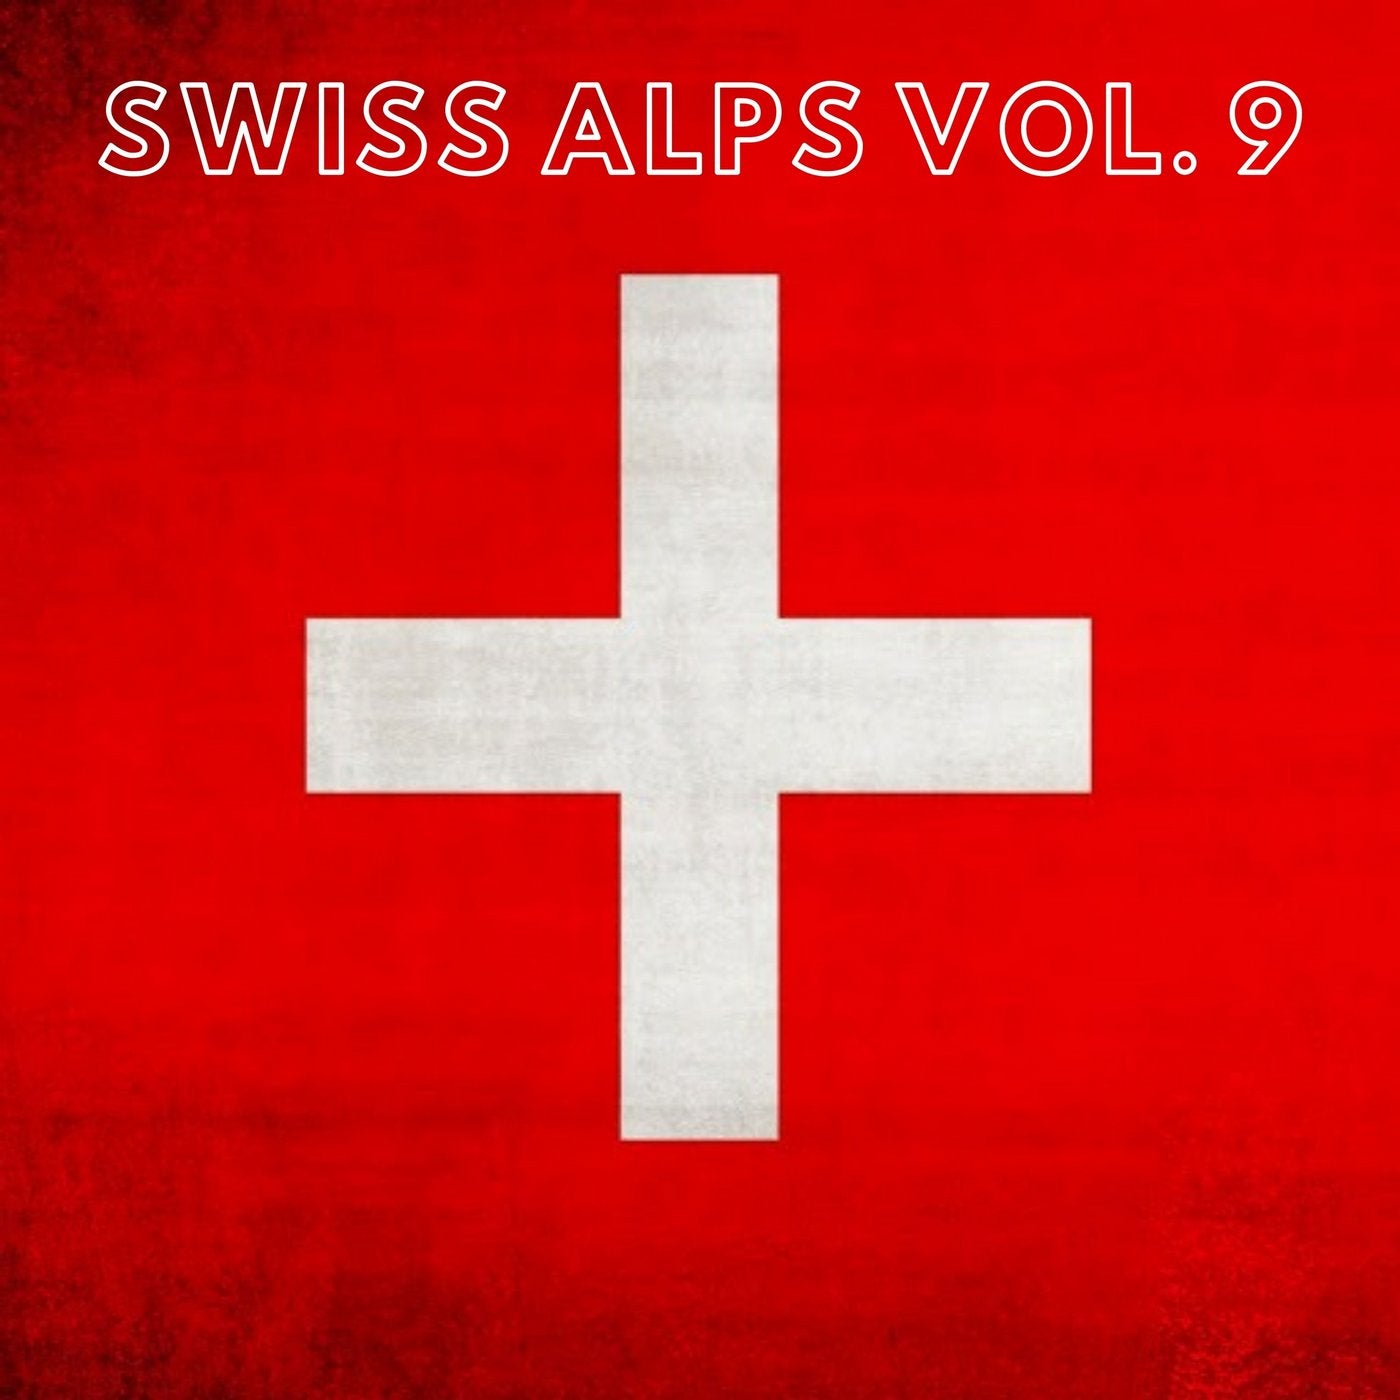 Swiss Alps Vol. 9